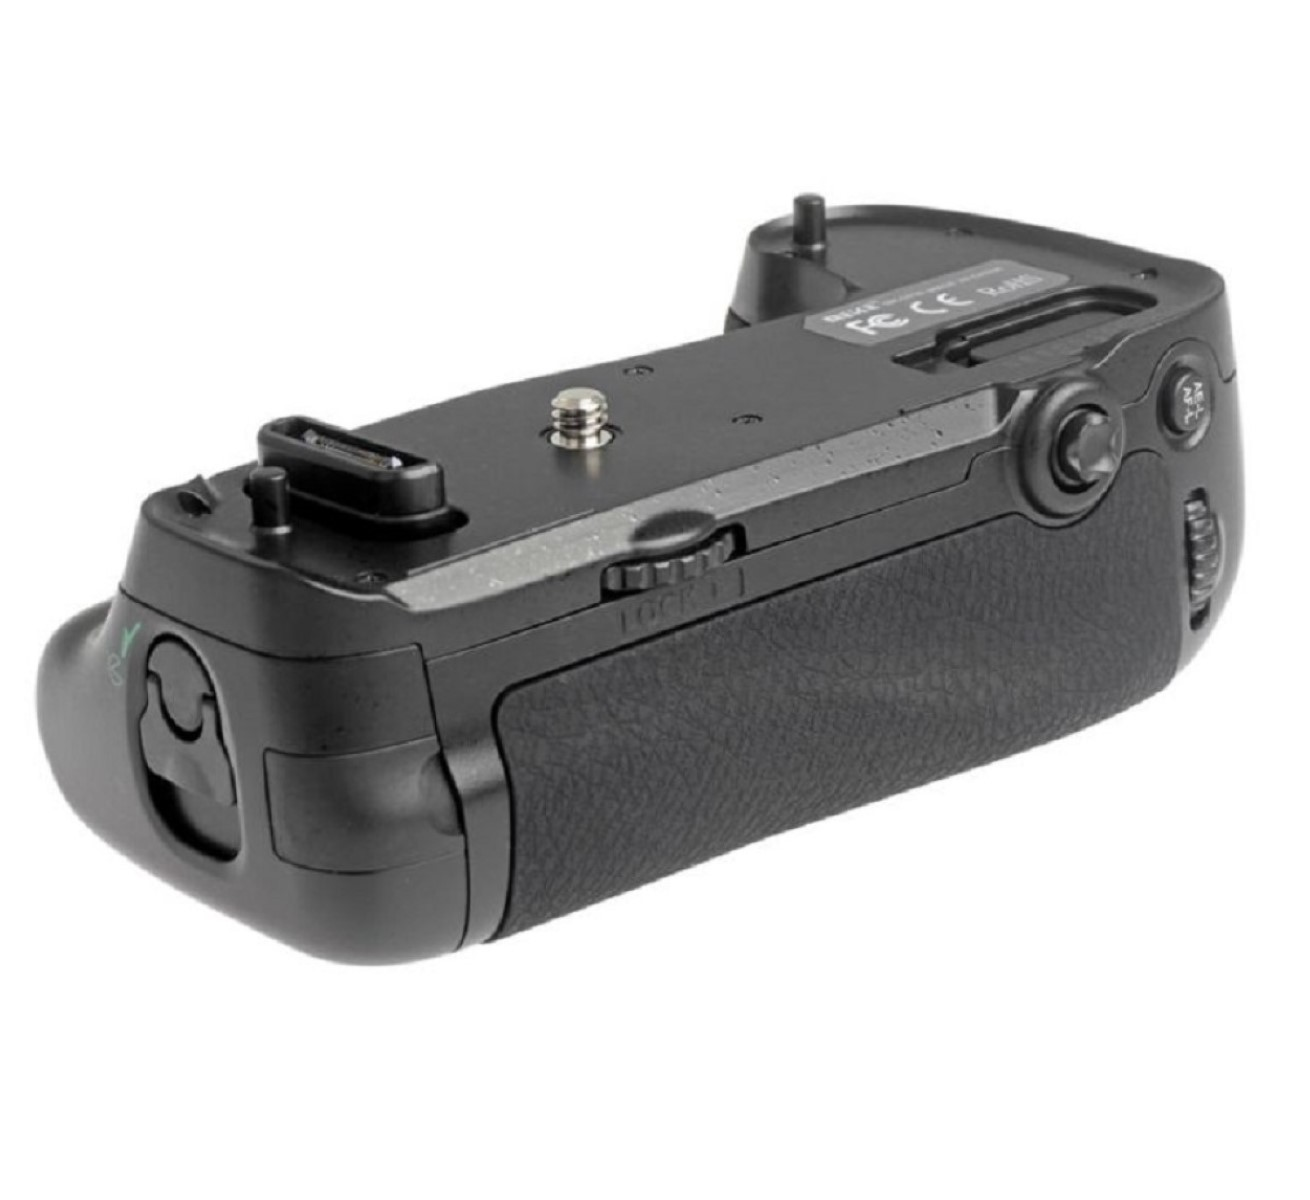 D750 Batteriegriff, MB-D16 wie D750 Funk-Timer-Fernauslöser Black, MK-DR750, passend Nikon Nikon mit Batteriegriff für für AYEX